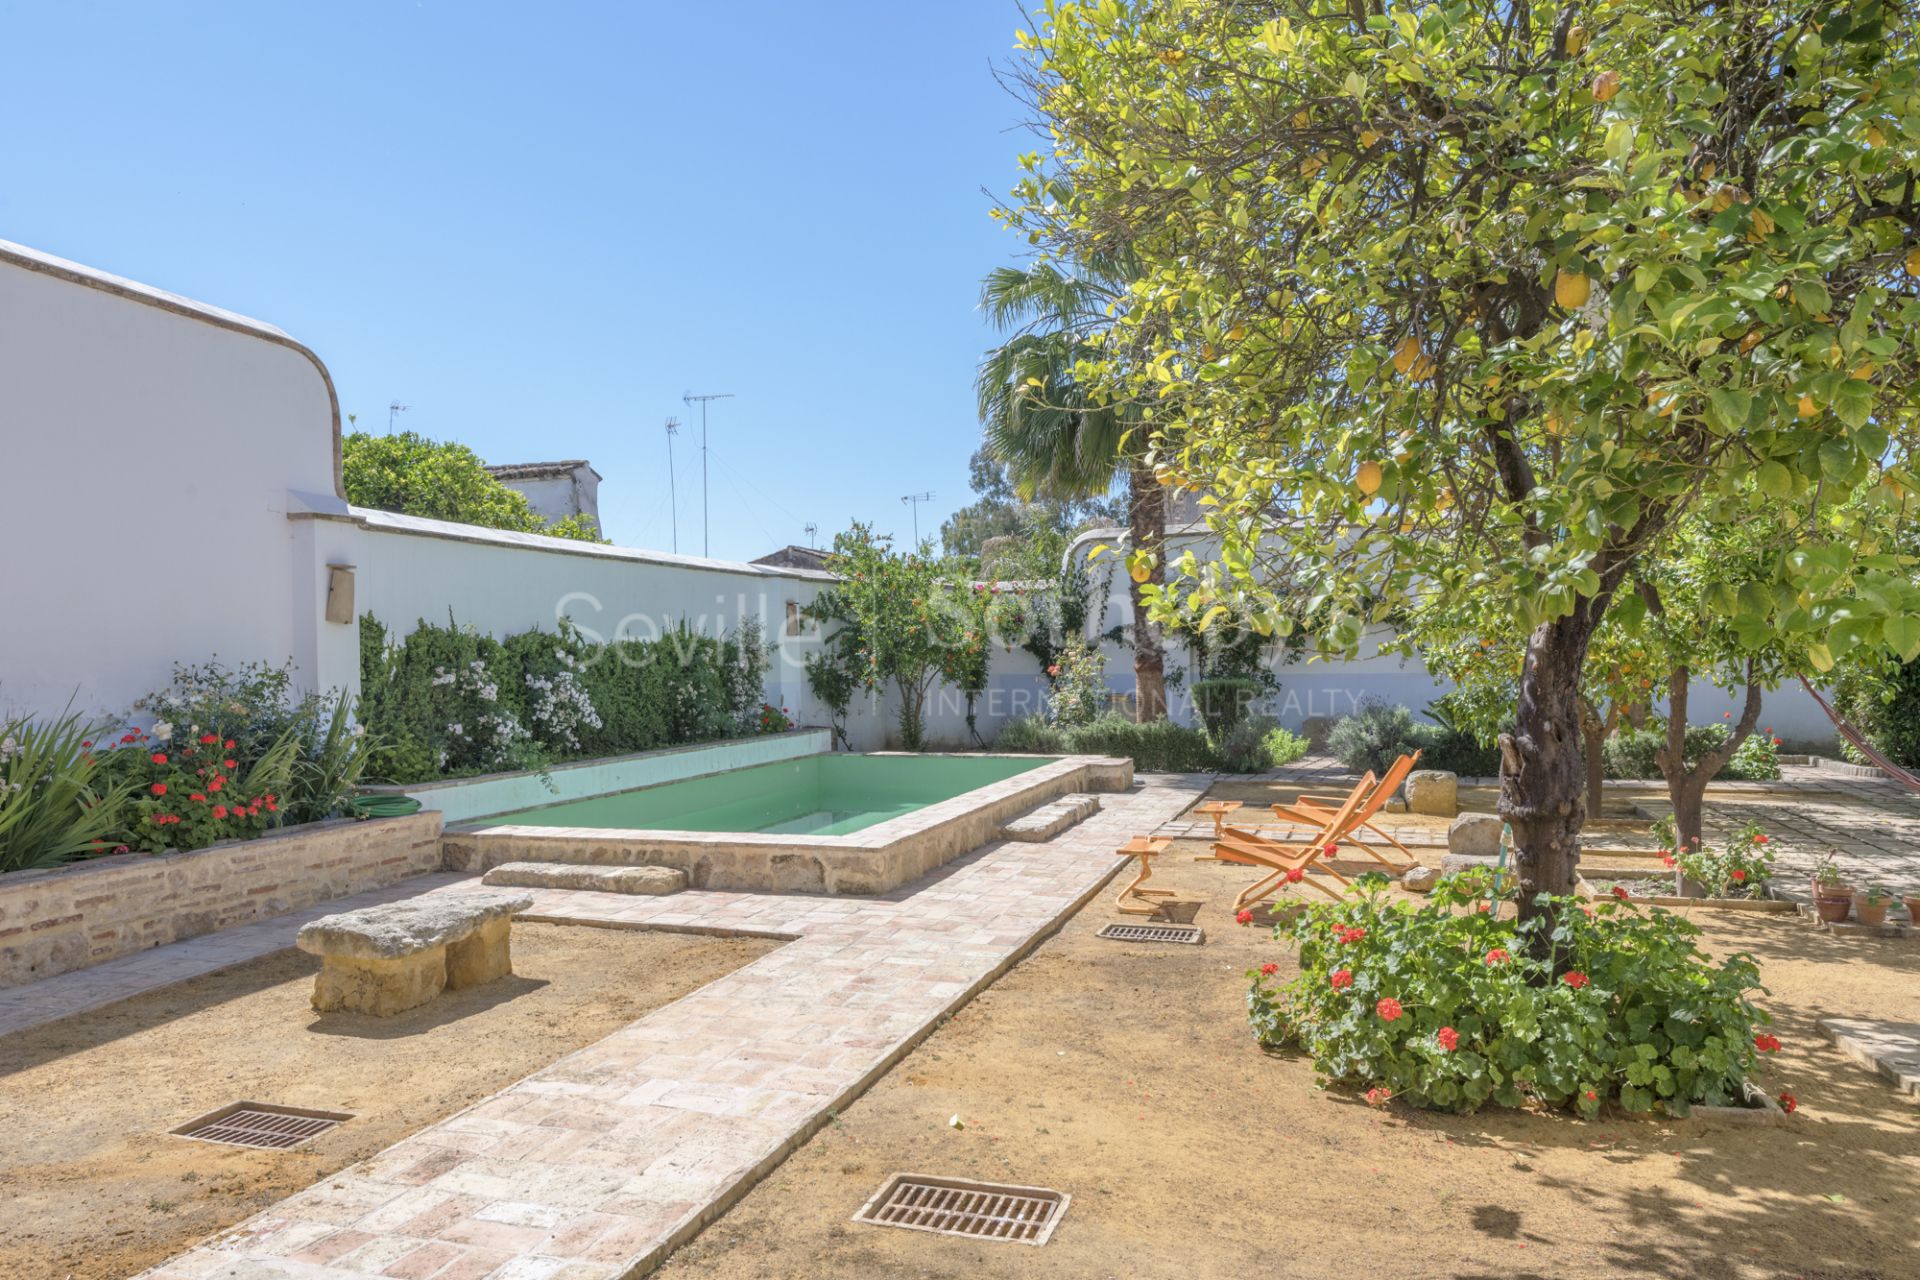 Casa decorada por Jaime Parladé con piscina privada. Alquiler de corta temporada.